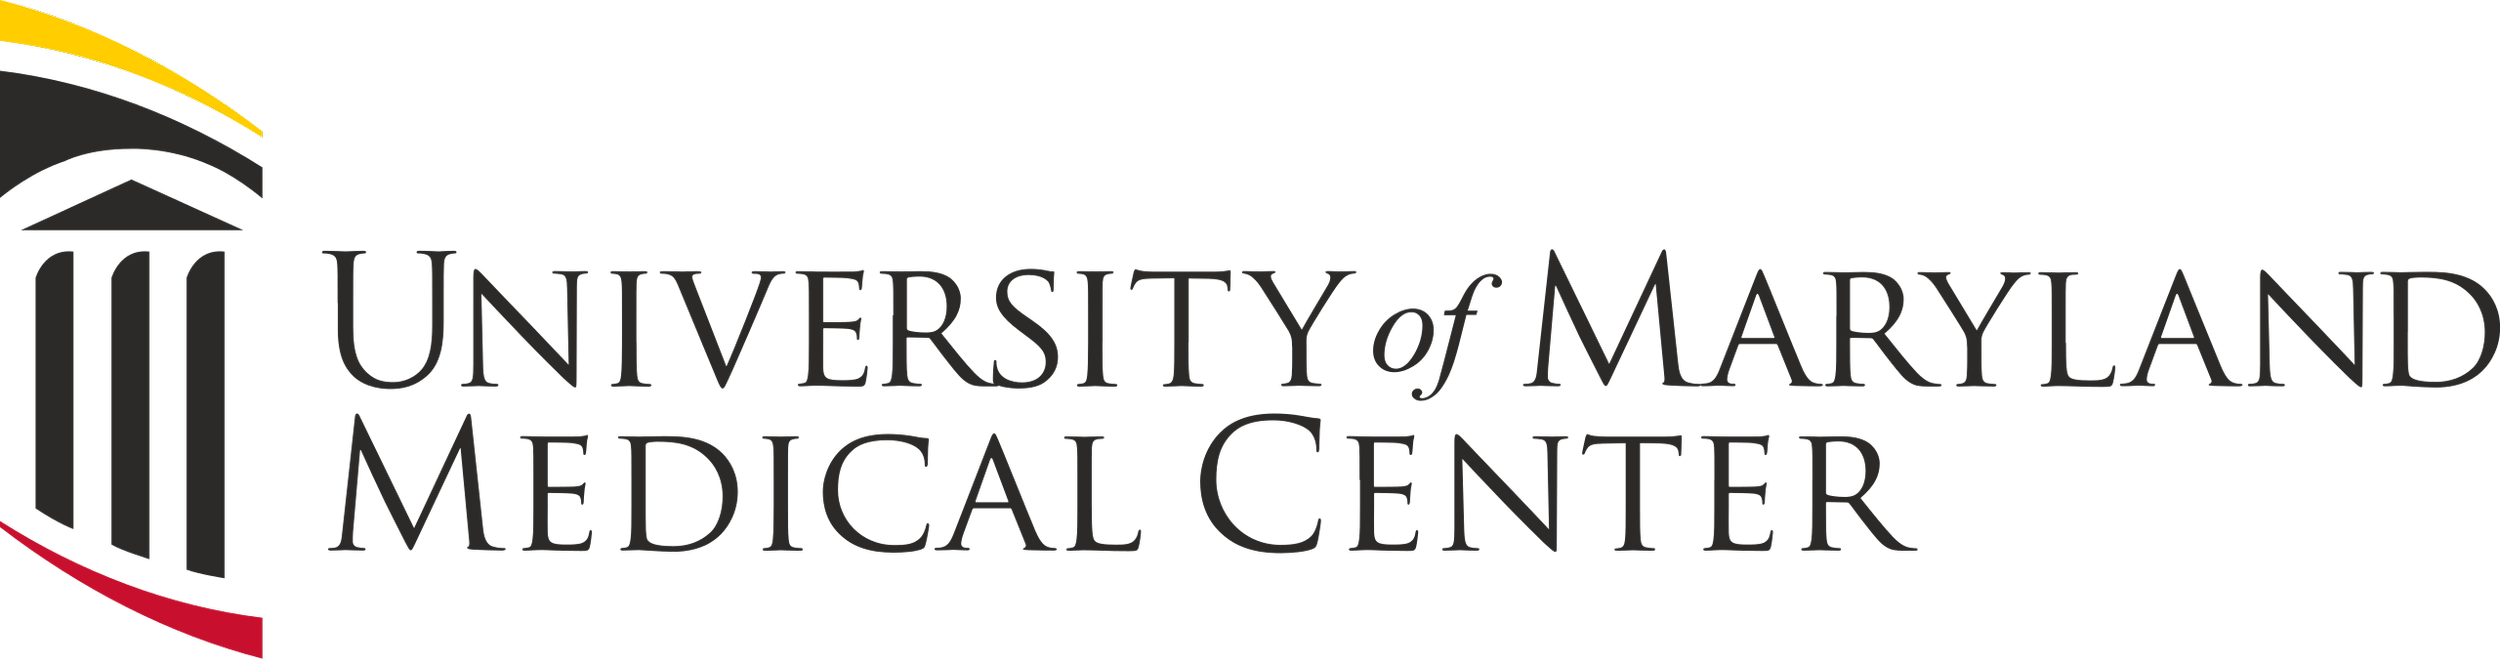 University_of_Maryland_Medical_Center_logo.svg.png